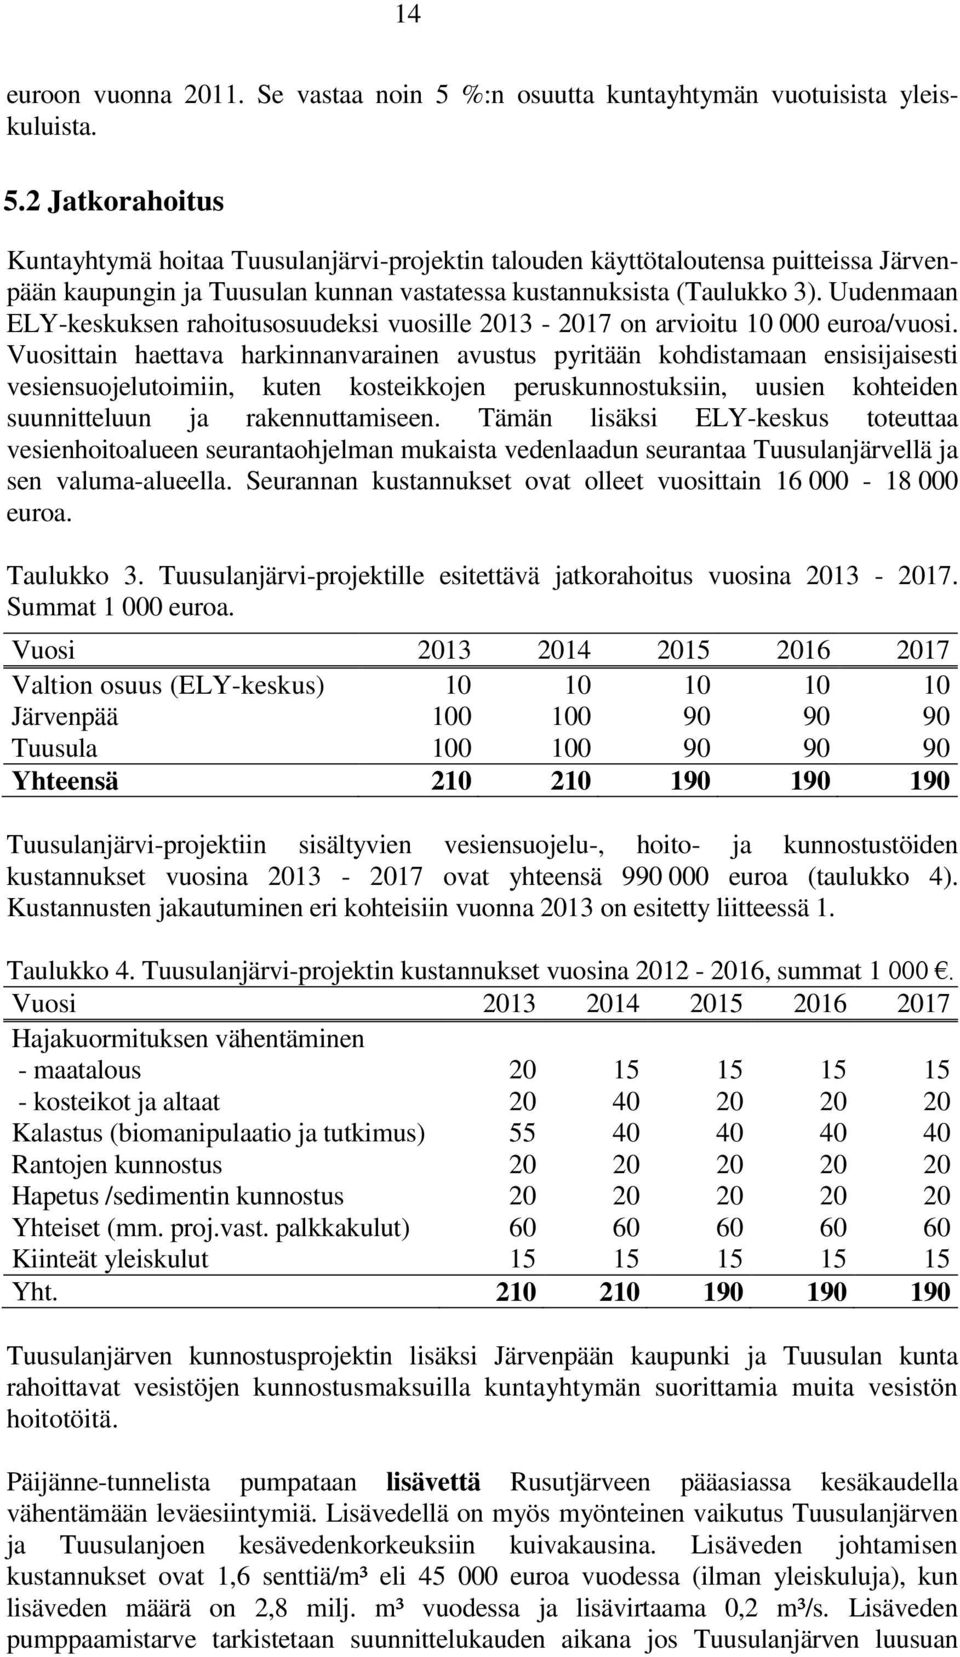 2 Jatkorahoitus Kuntayhtymä hoitaa Tuusulanjärvi-projektin talouden käyttötaloutensa puitteissa Järvenpään kaupungin ja Tuusulan kunnan vastatessa kustannuksista (Taulukko 3).